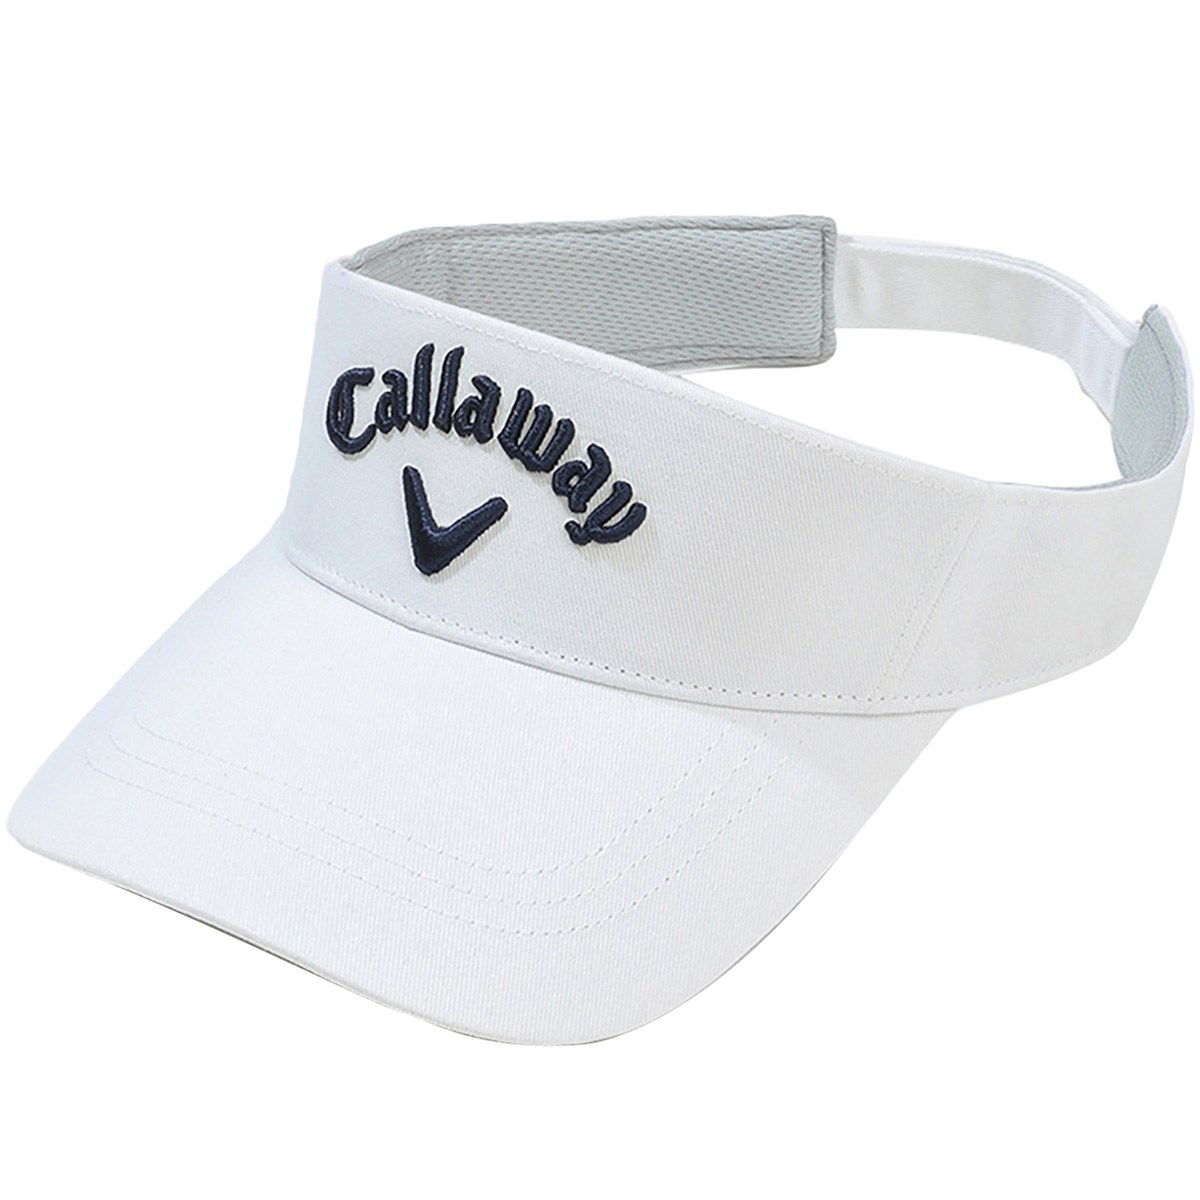 サンバイザー ゴルフ帽子 キャロウェイ レディースの人気商品